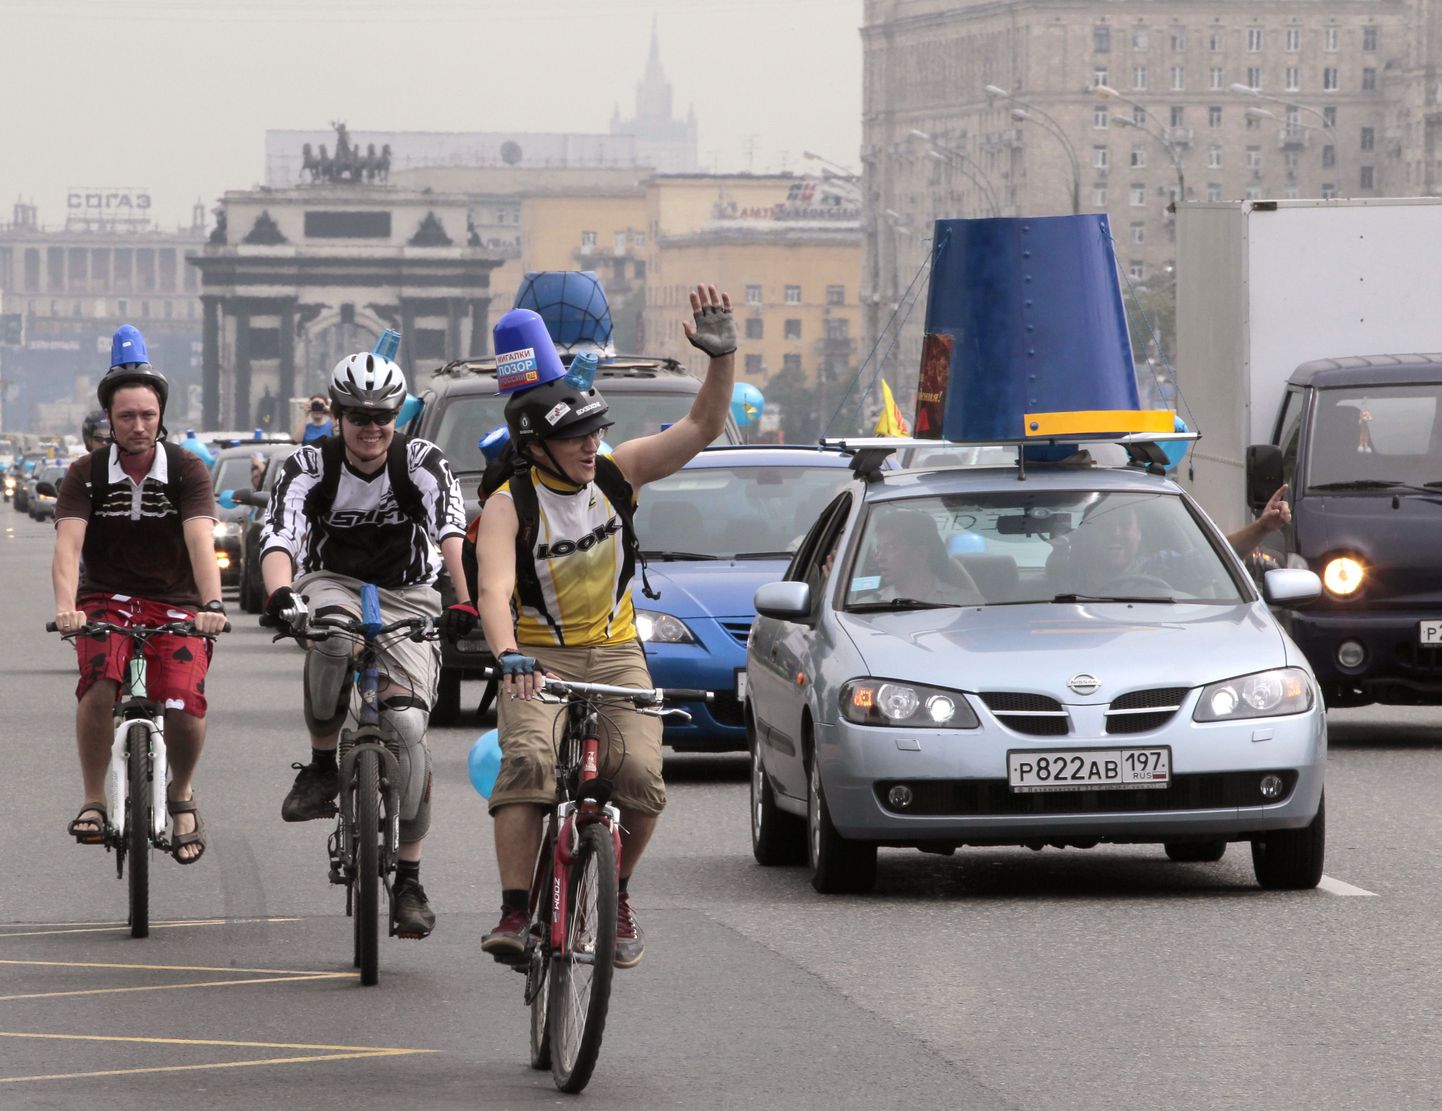 Акция "синих ведерок" - протест москвичей против использования чиновниками проблесковых маяков на служебных машиных. Архивное фото.